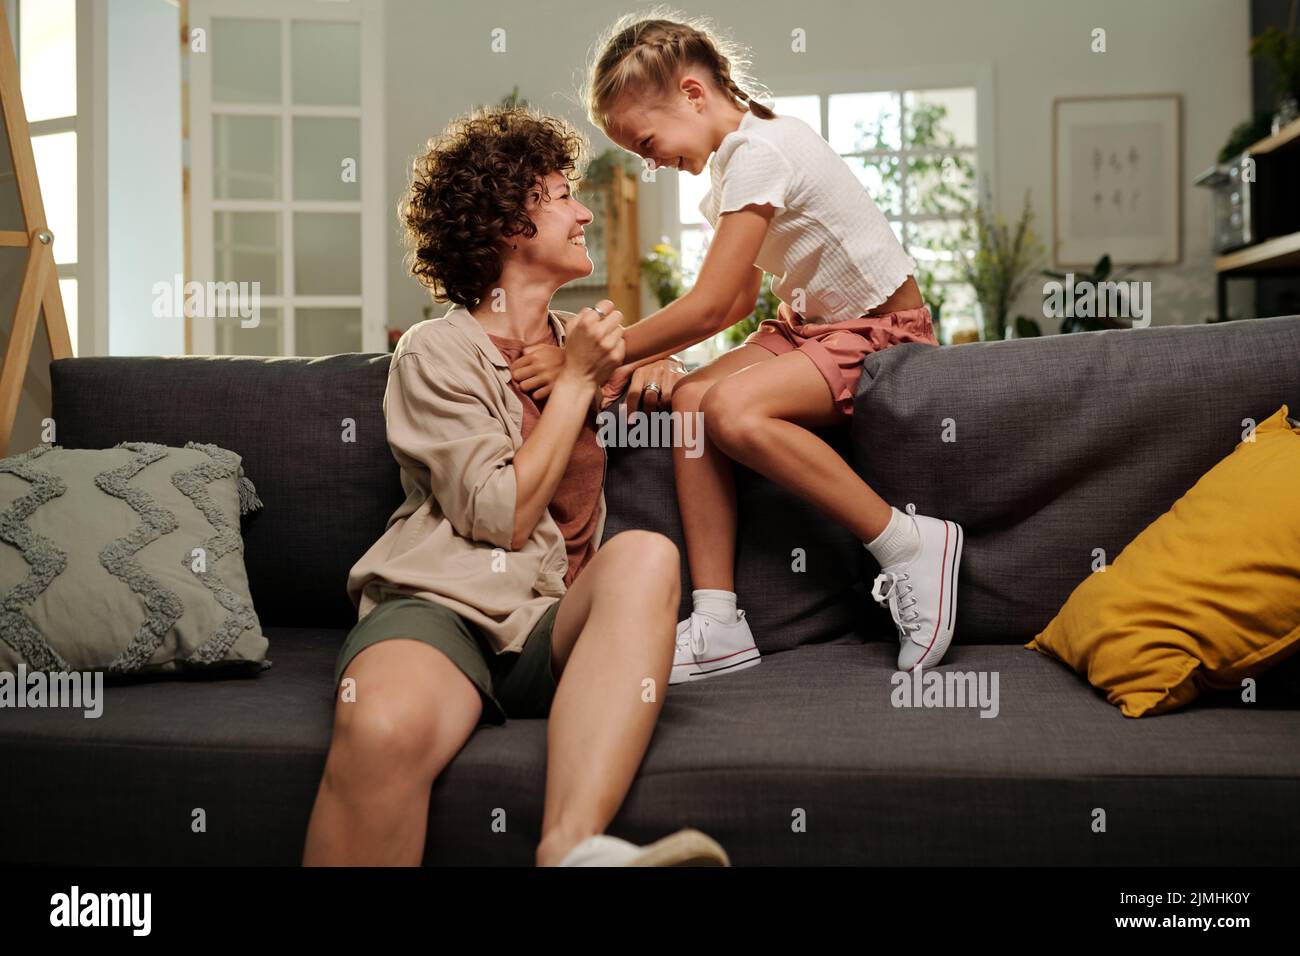 Ragazza allegra carina e la sua madre felice ridendo a qualcosa di divertente mentre si rilassano sul divano e si guardano a vicenda a piacere Foto Stock